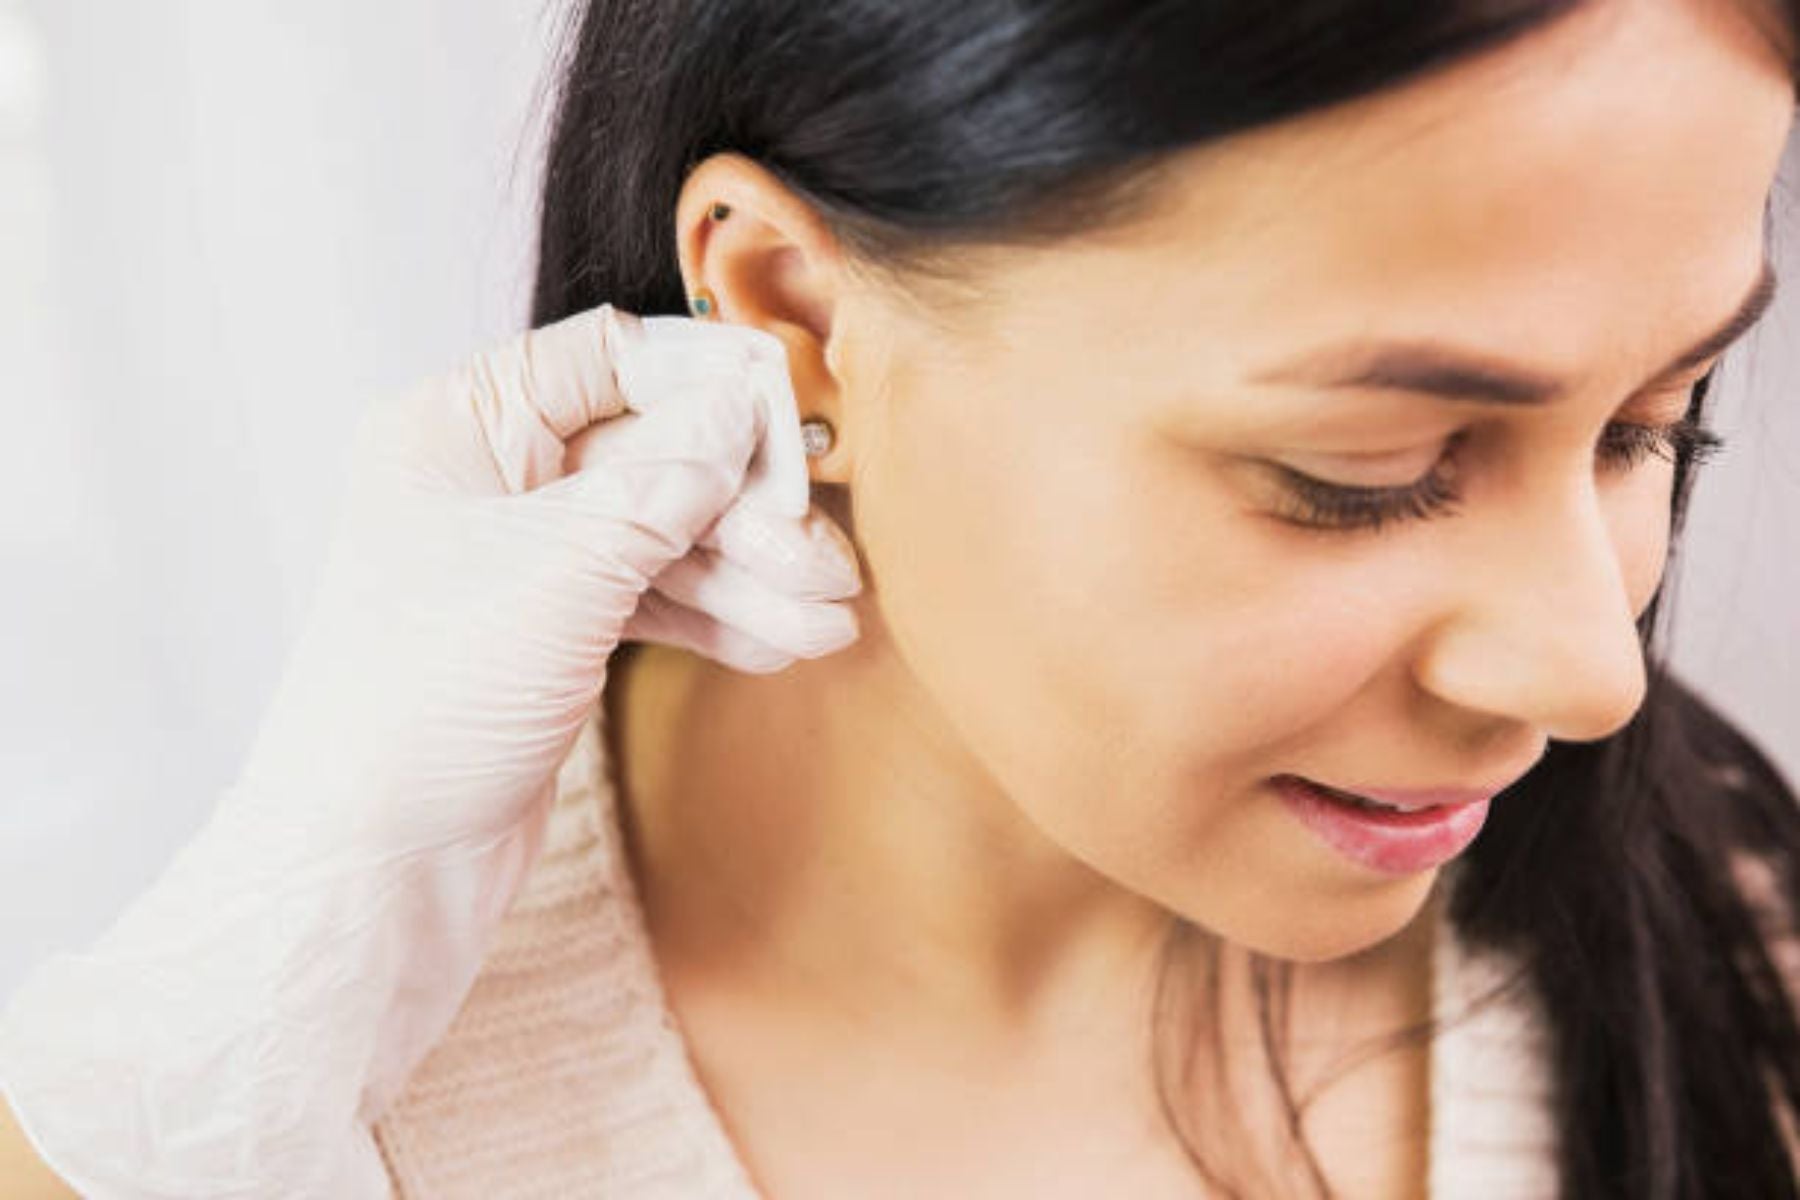 Ear Piercing Cleaning